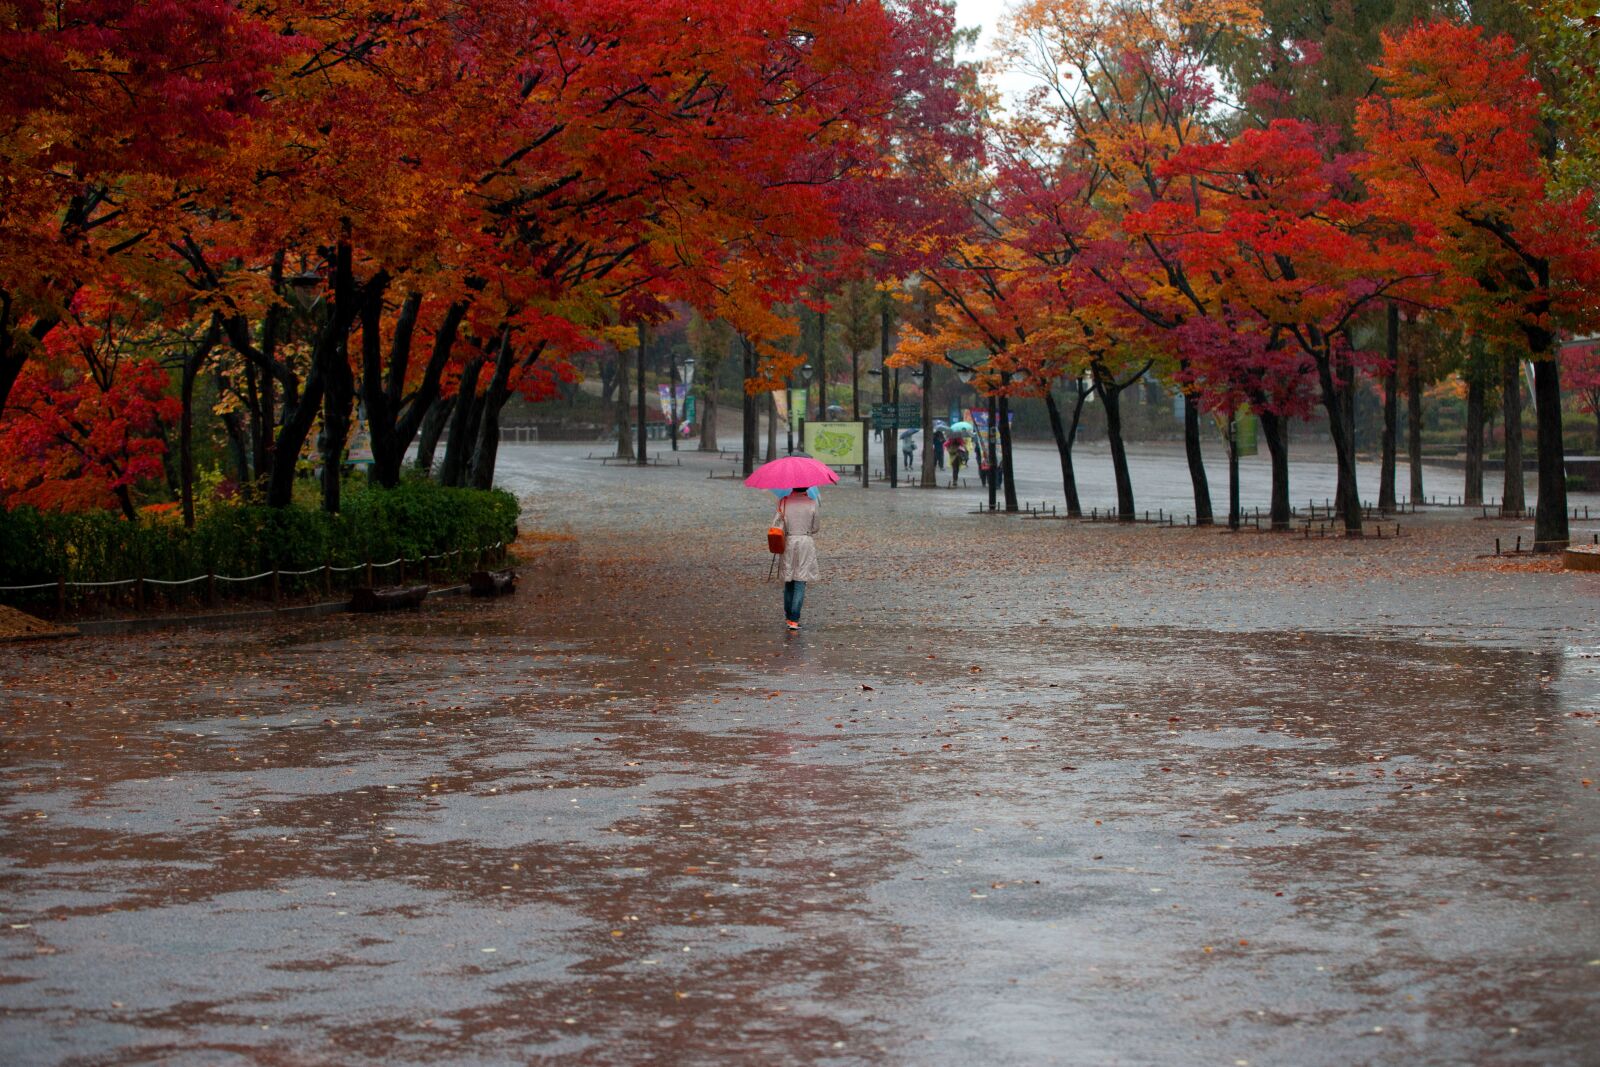 Sony Alpha DSLR-A900 sample photo. Autumn, woman, rain photography